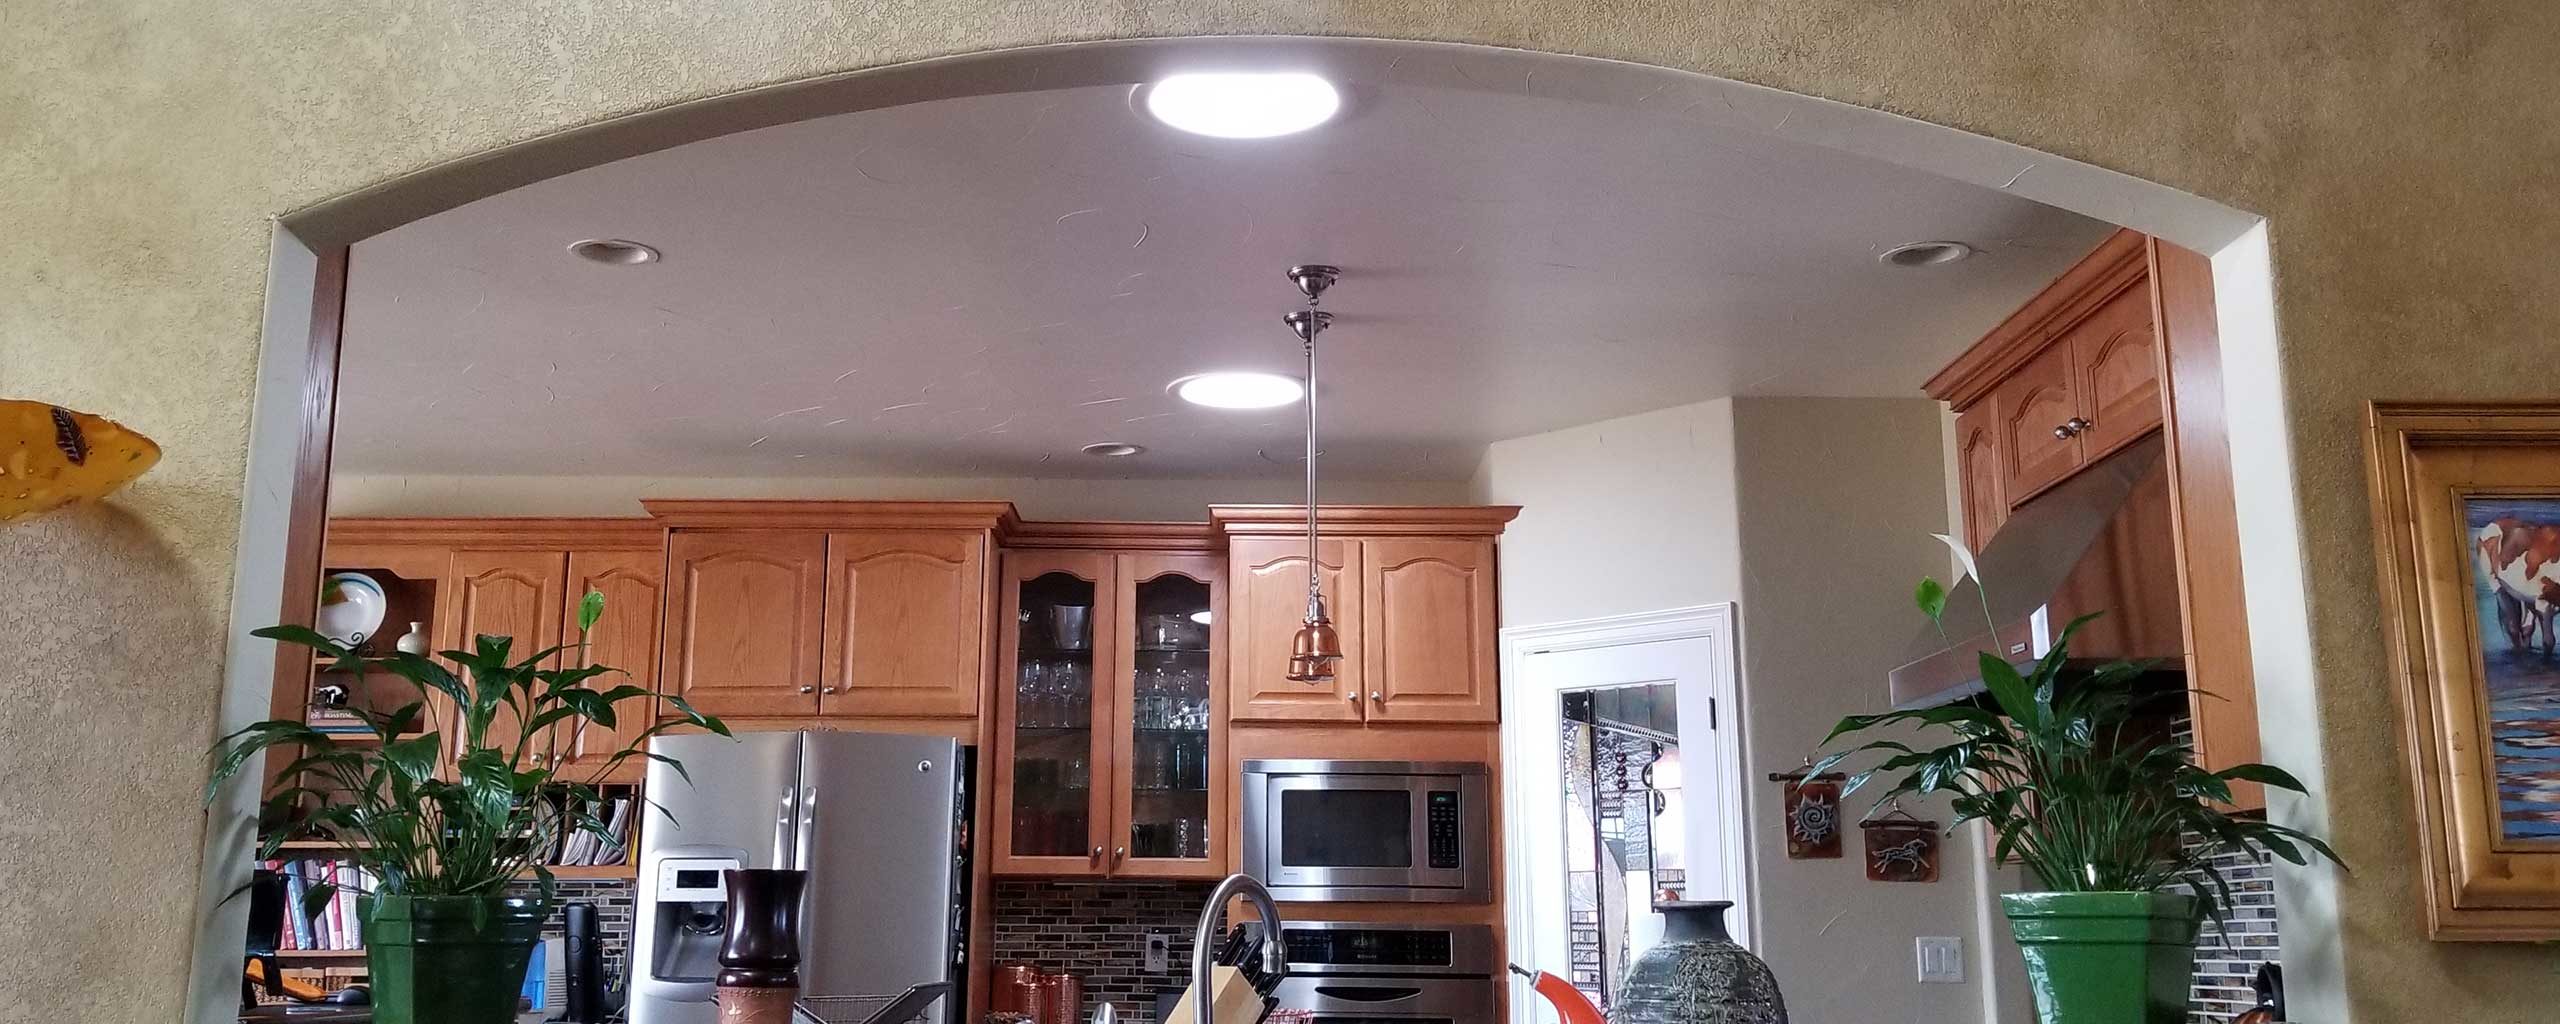 Kitchen Skylight